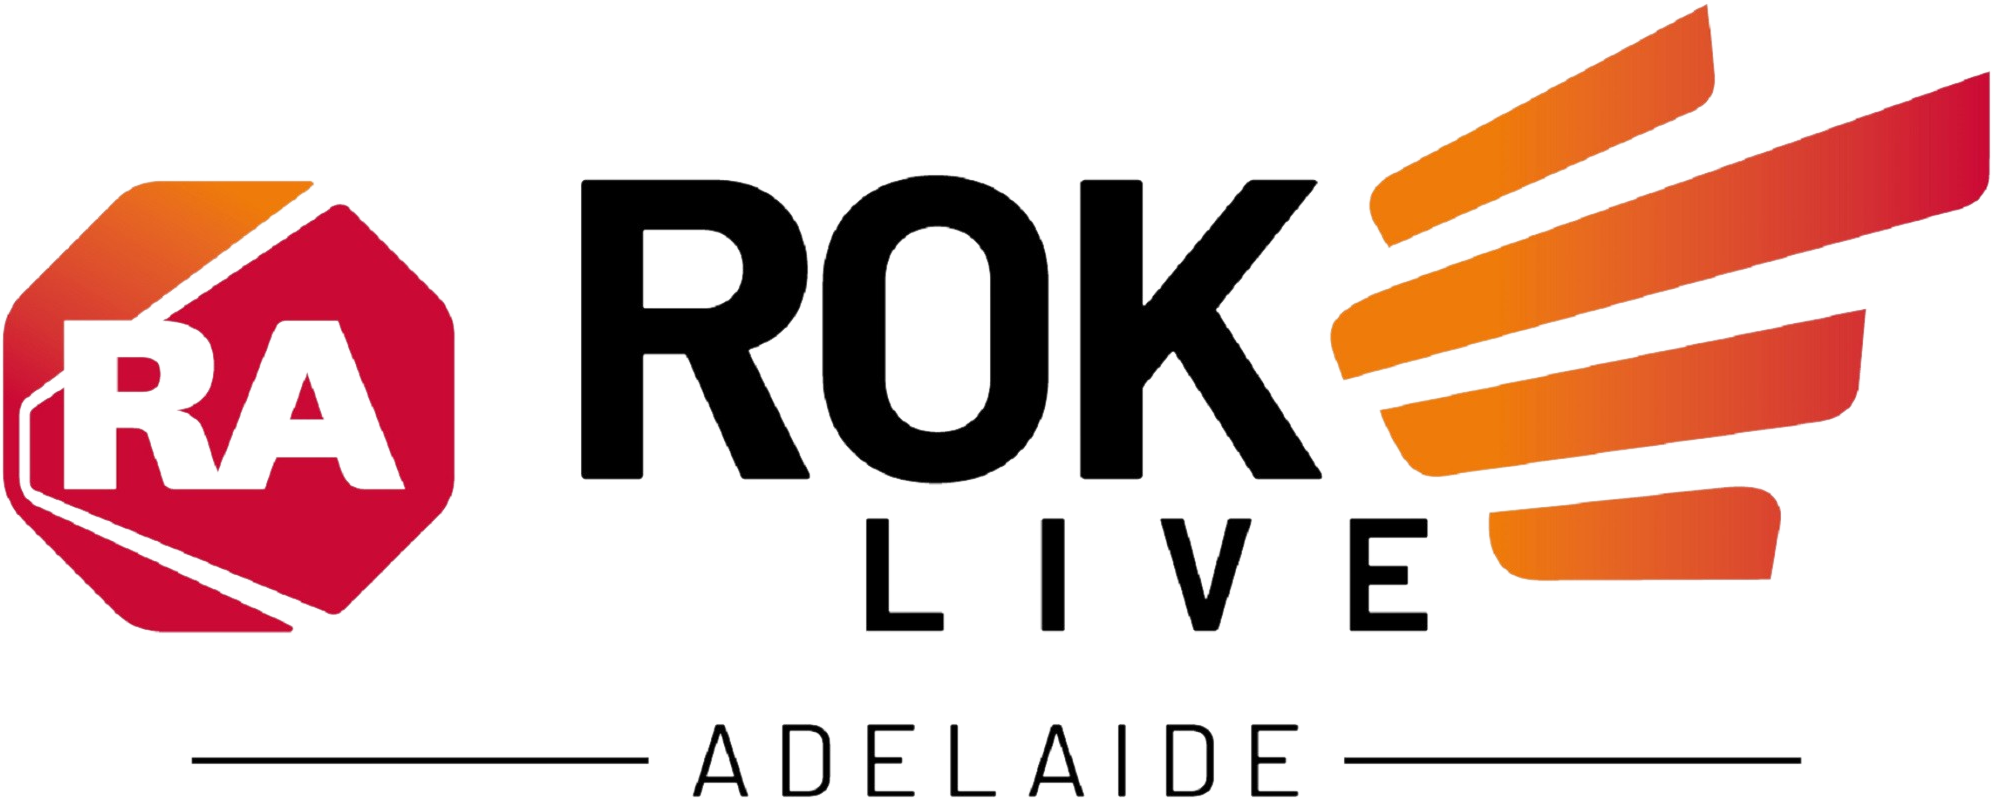 ROK Live Adelaide logo